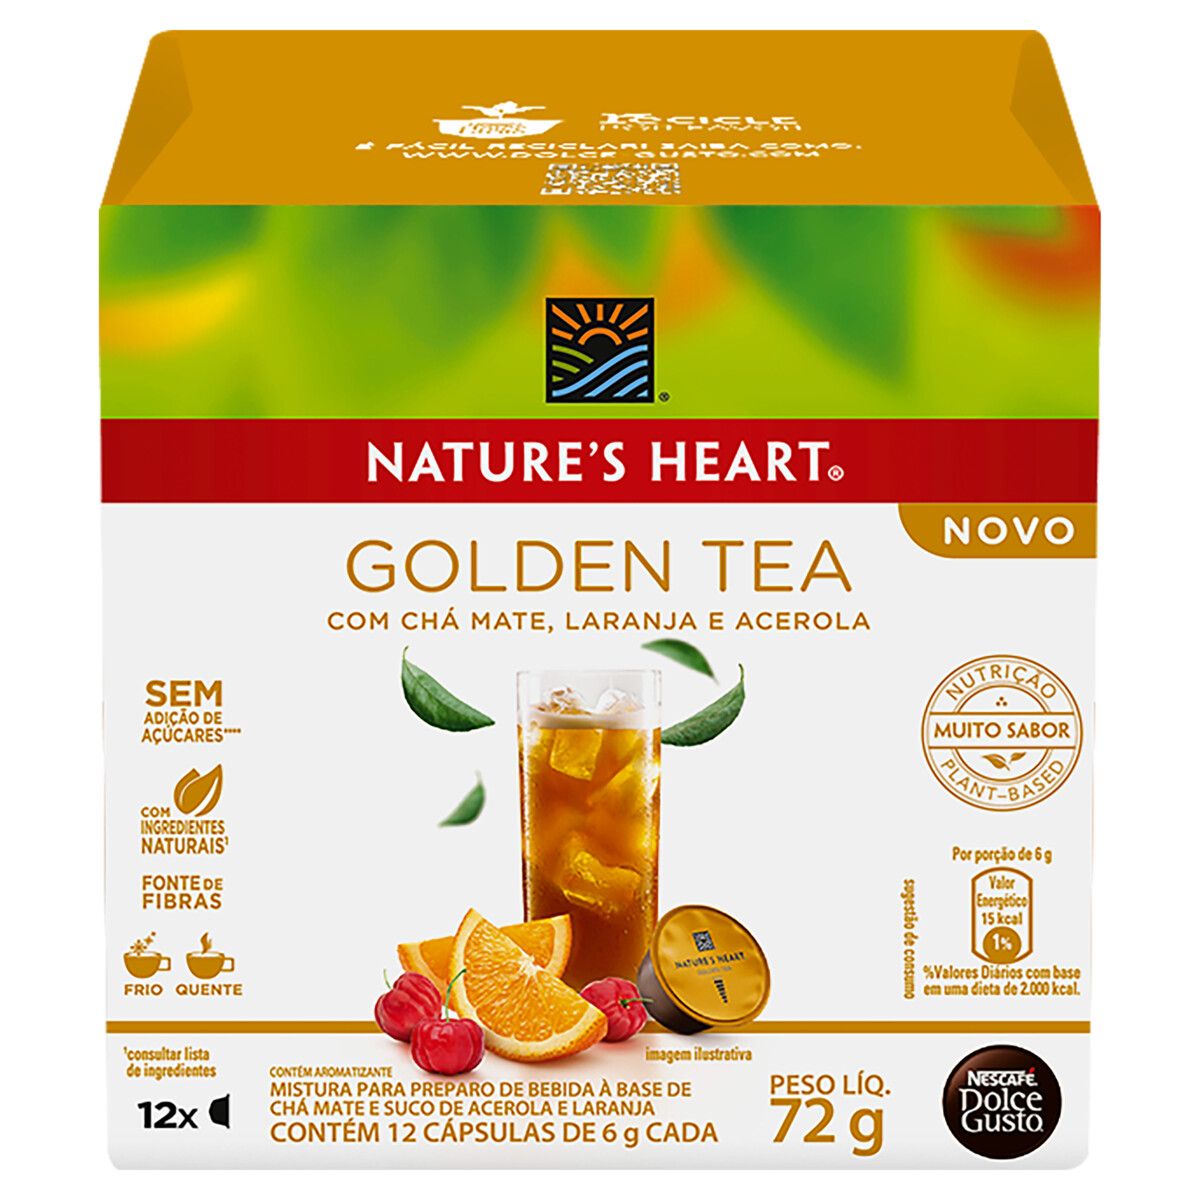 Chá Mate em Cápsula Golden Tea Nature's Heart Caixa 72g 12 Unidades